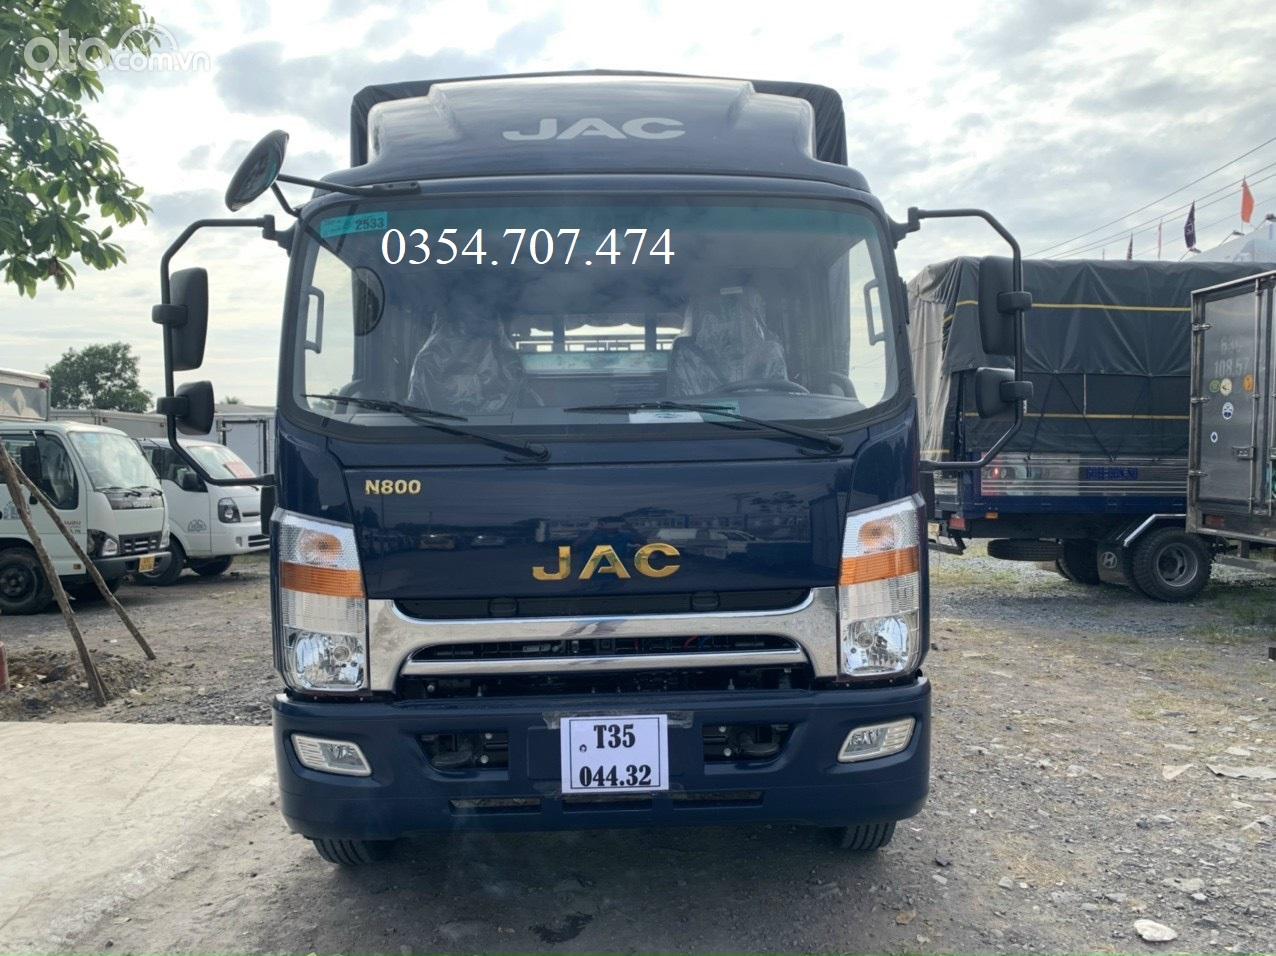 Báo giá xe JAC N800 - 8T thùng dài 7m6